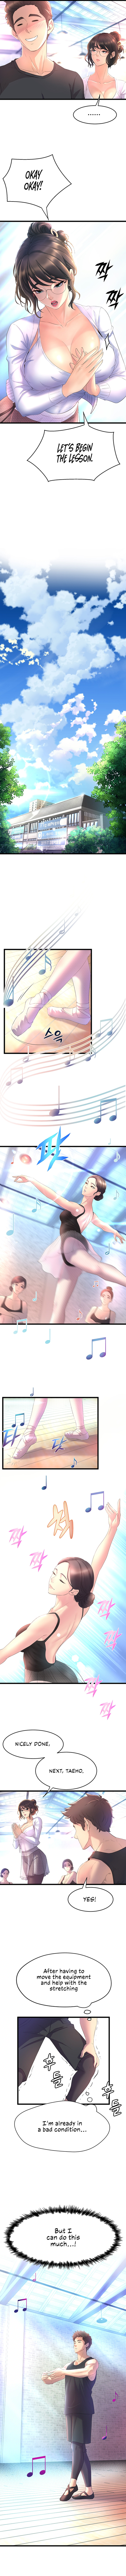 Dance Department’s Female Sunbaes image